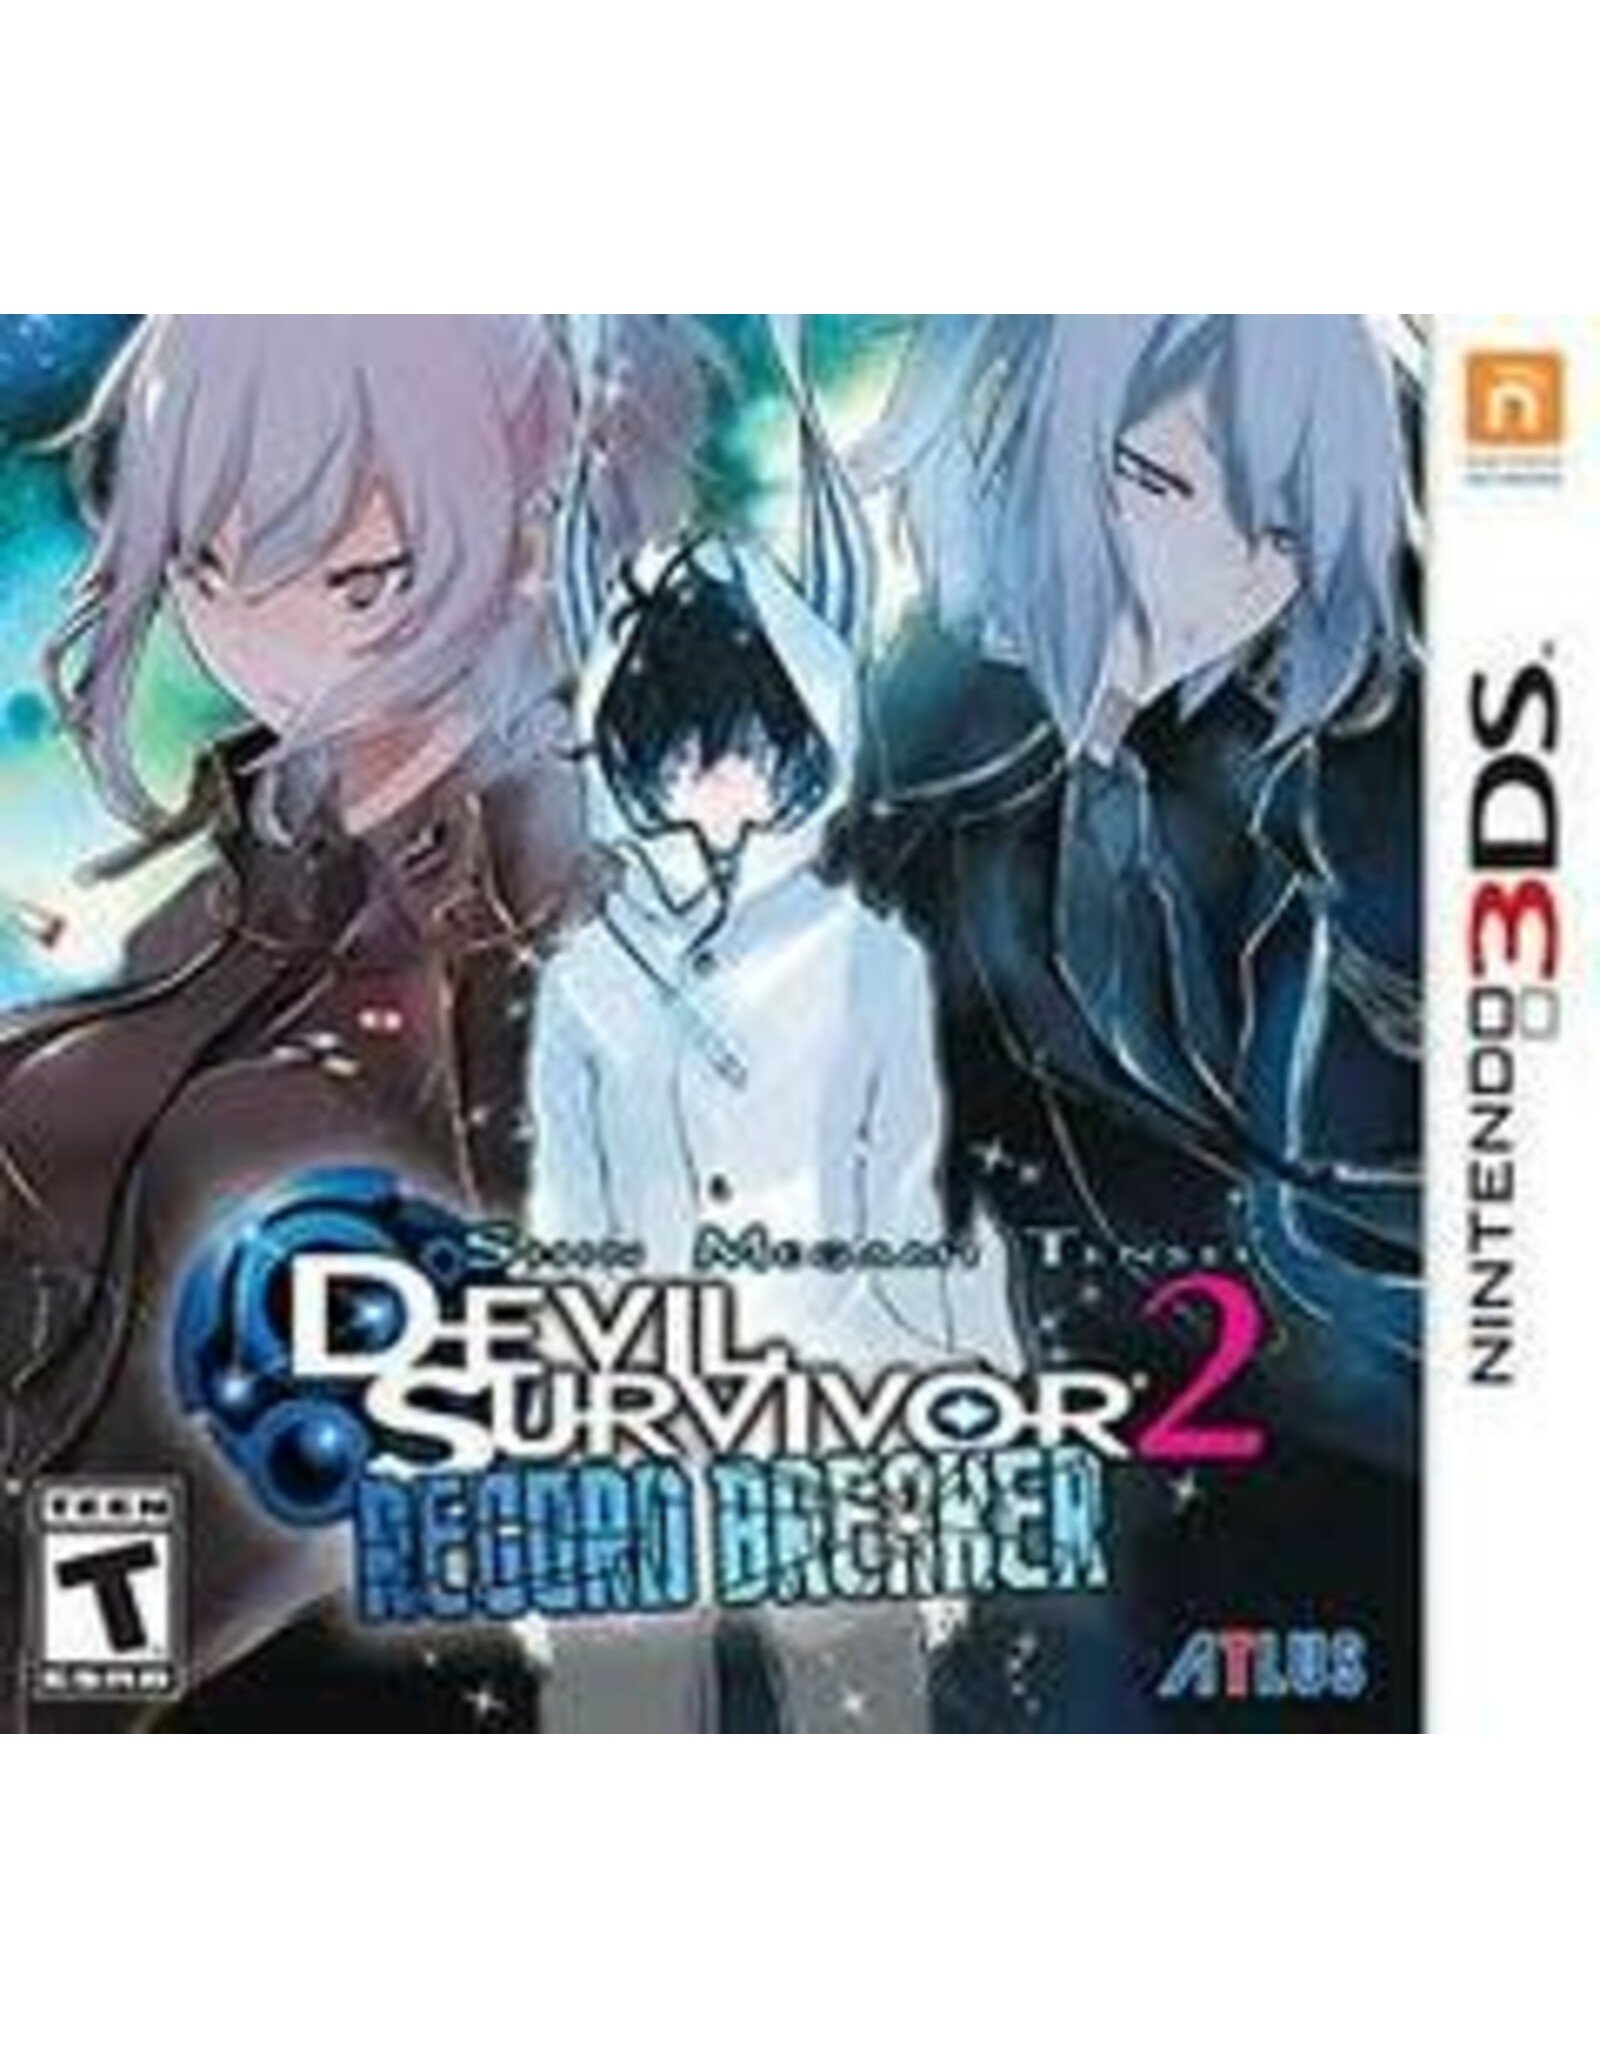 Nintendo 3DS Shin Megami Tensei: Devil Survivor 2 Record Breaker (Used)